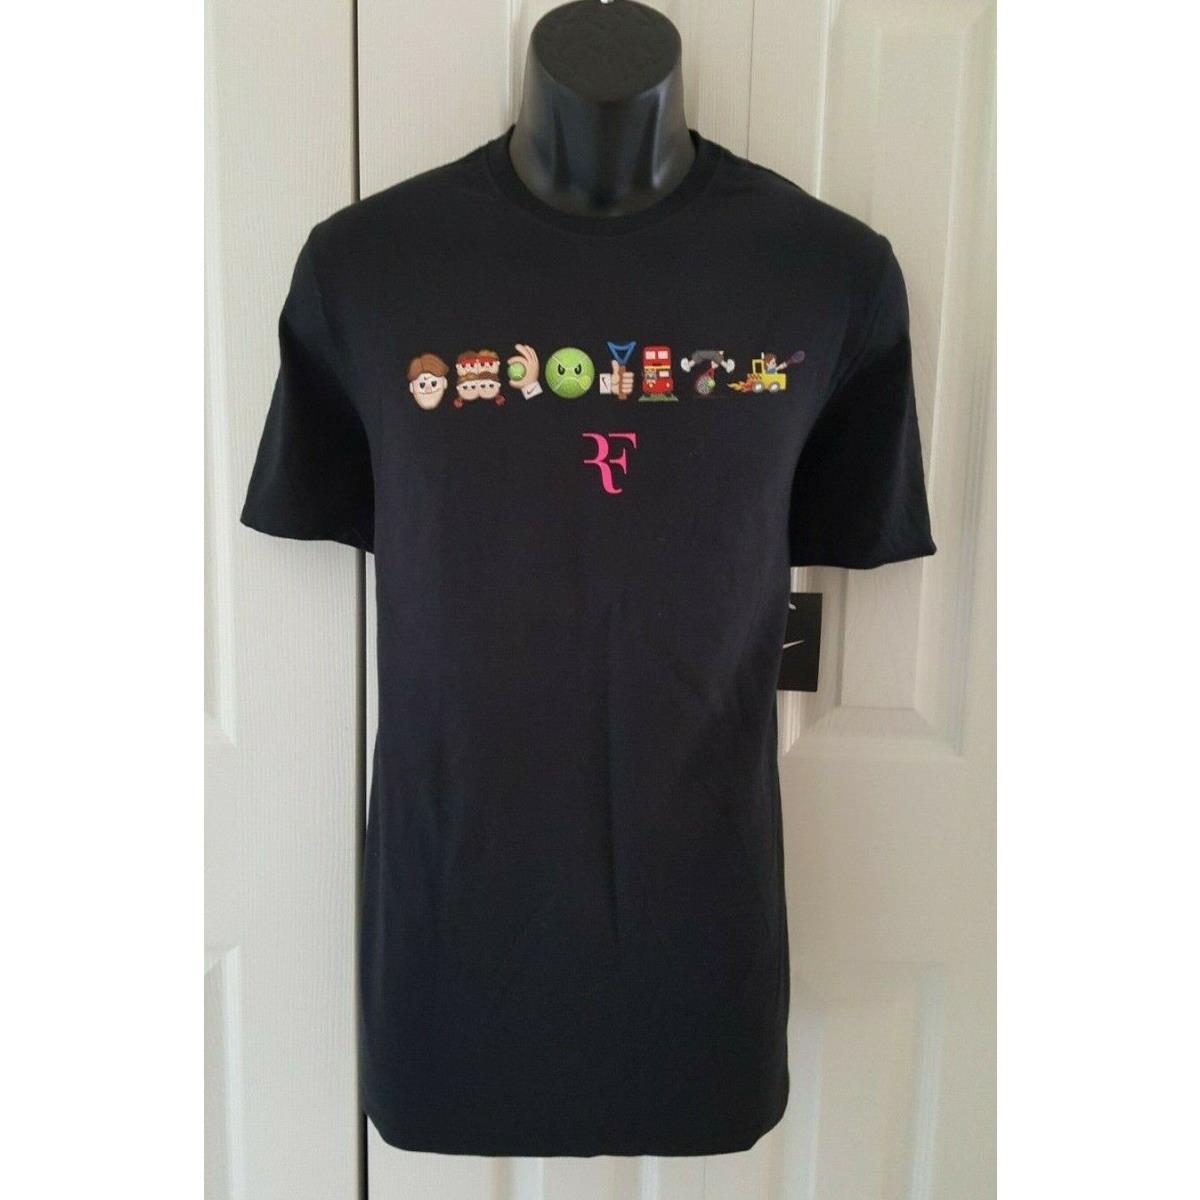 Mens Nike Federer RF Emoji Tennis T-shirt Black 889148-010